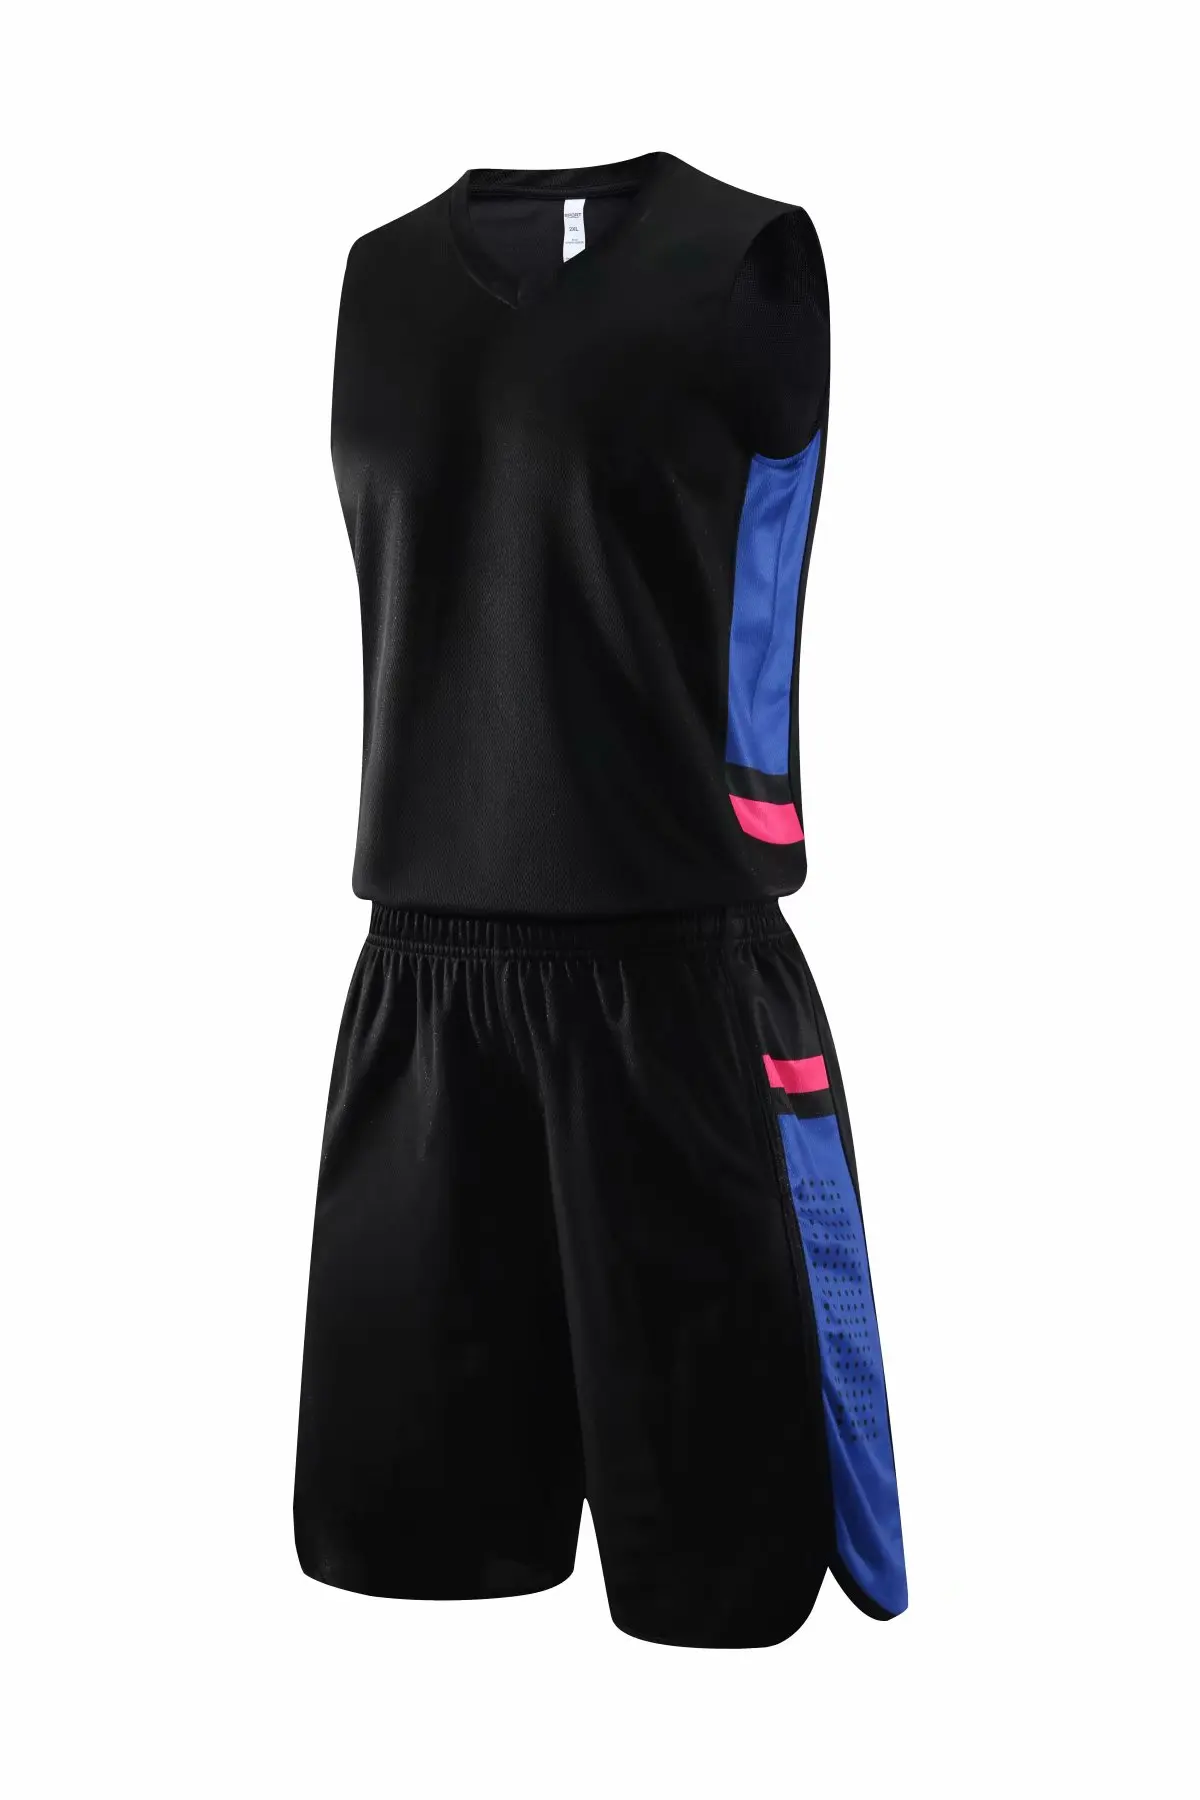 Баскетбольная форма на заказ, баскетбольная майка и шорты, персональный дизайн, спортивный костюм для взрослых, молодежная одежда для бега, номер имени - Цвет: Black-blue